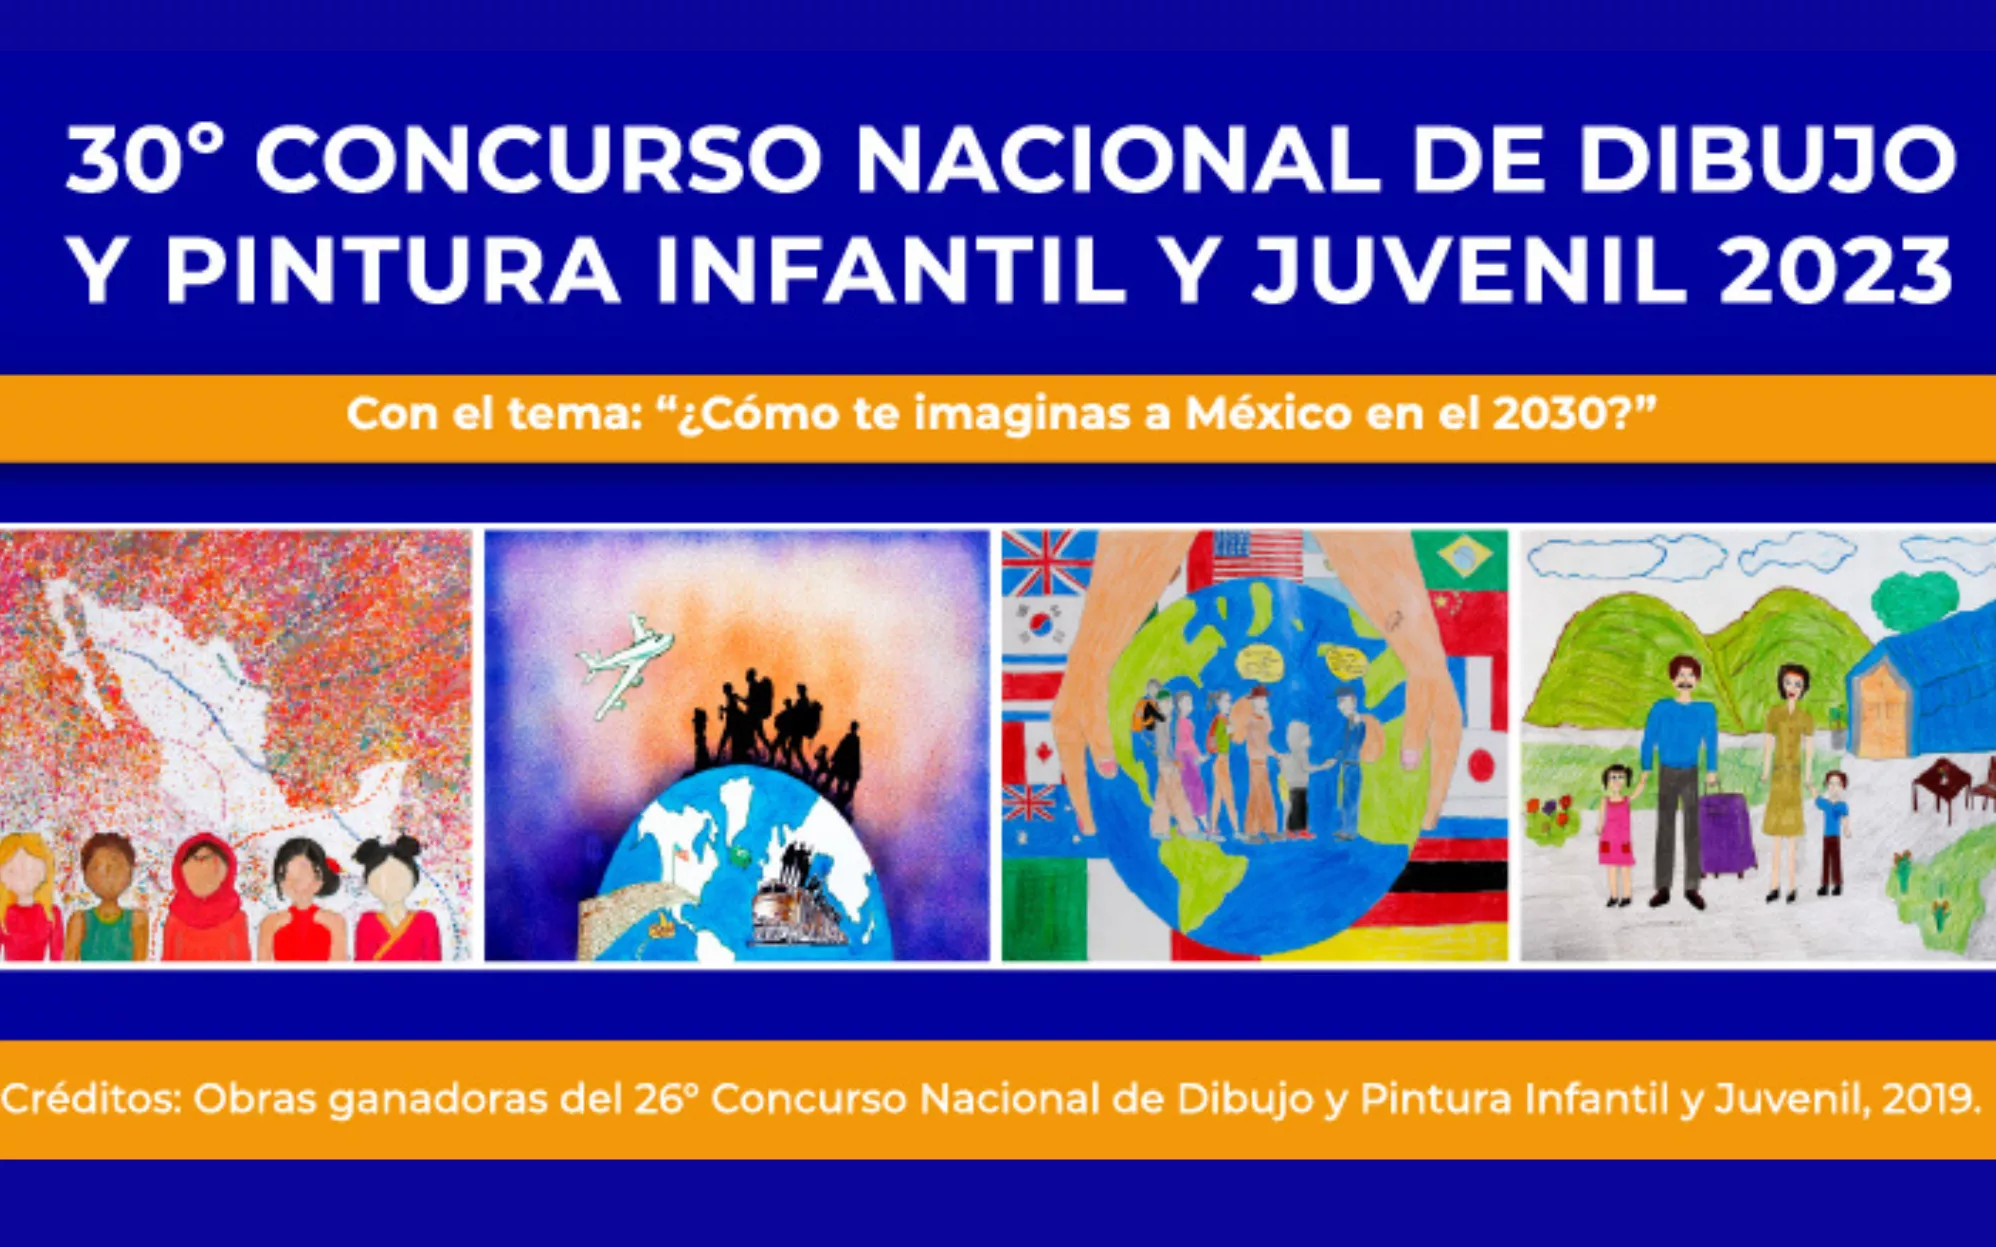 Participa en el 30° Concurso Nacional de Dibujo y Pintura Infantil y Juvenil 2023. “¿Cómo te imaginas a México en el 2030?”